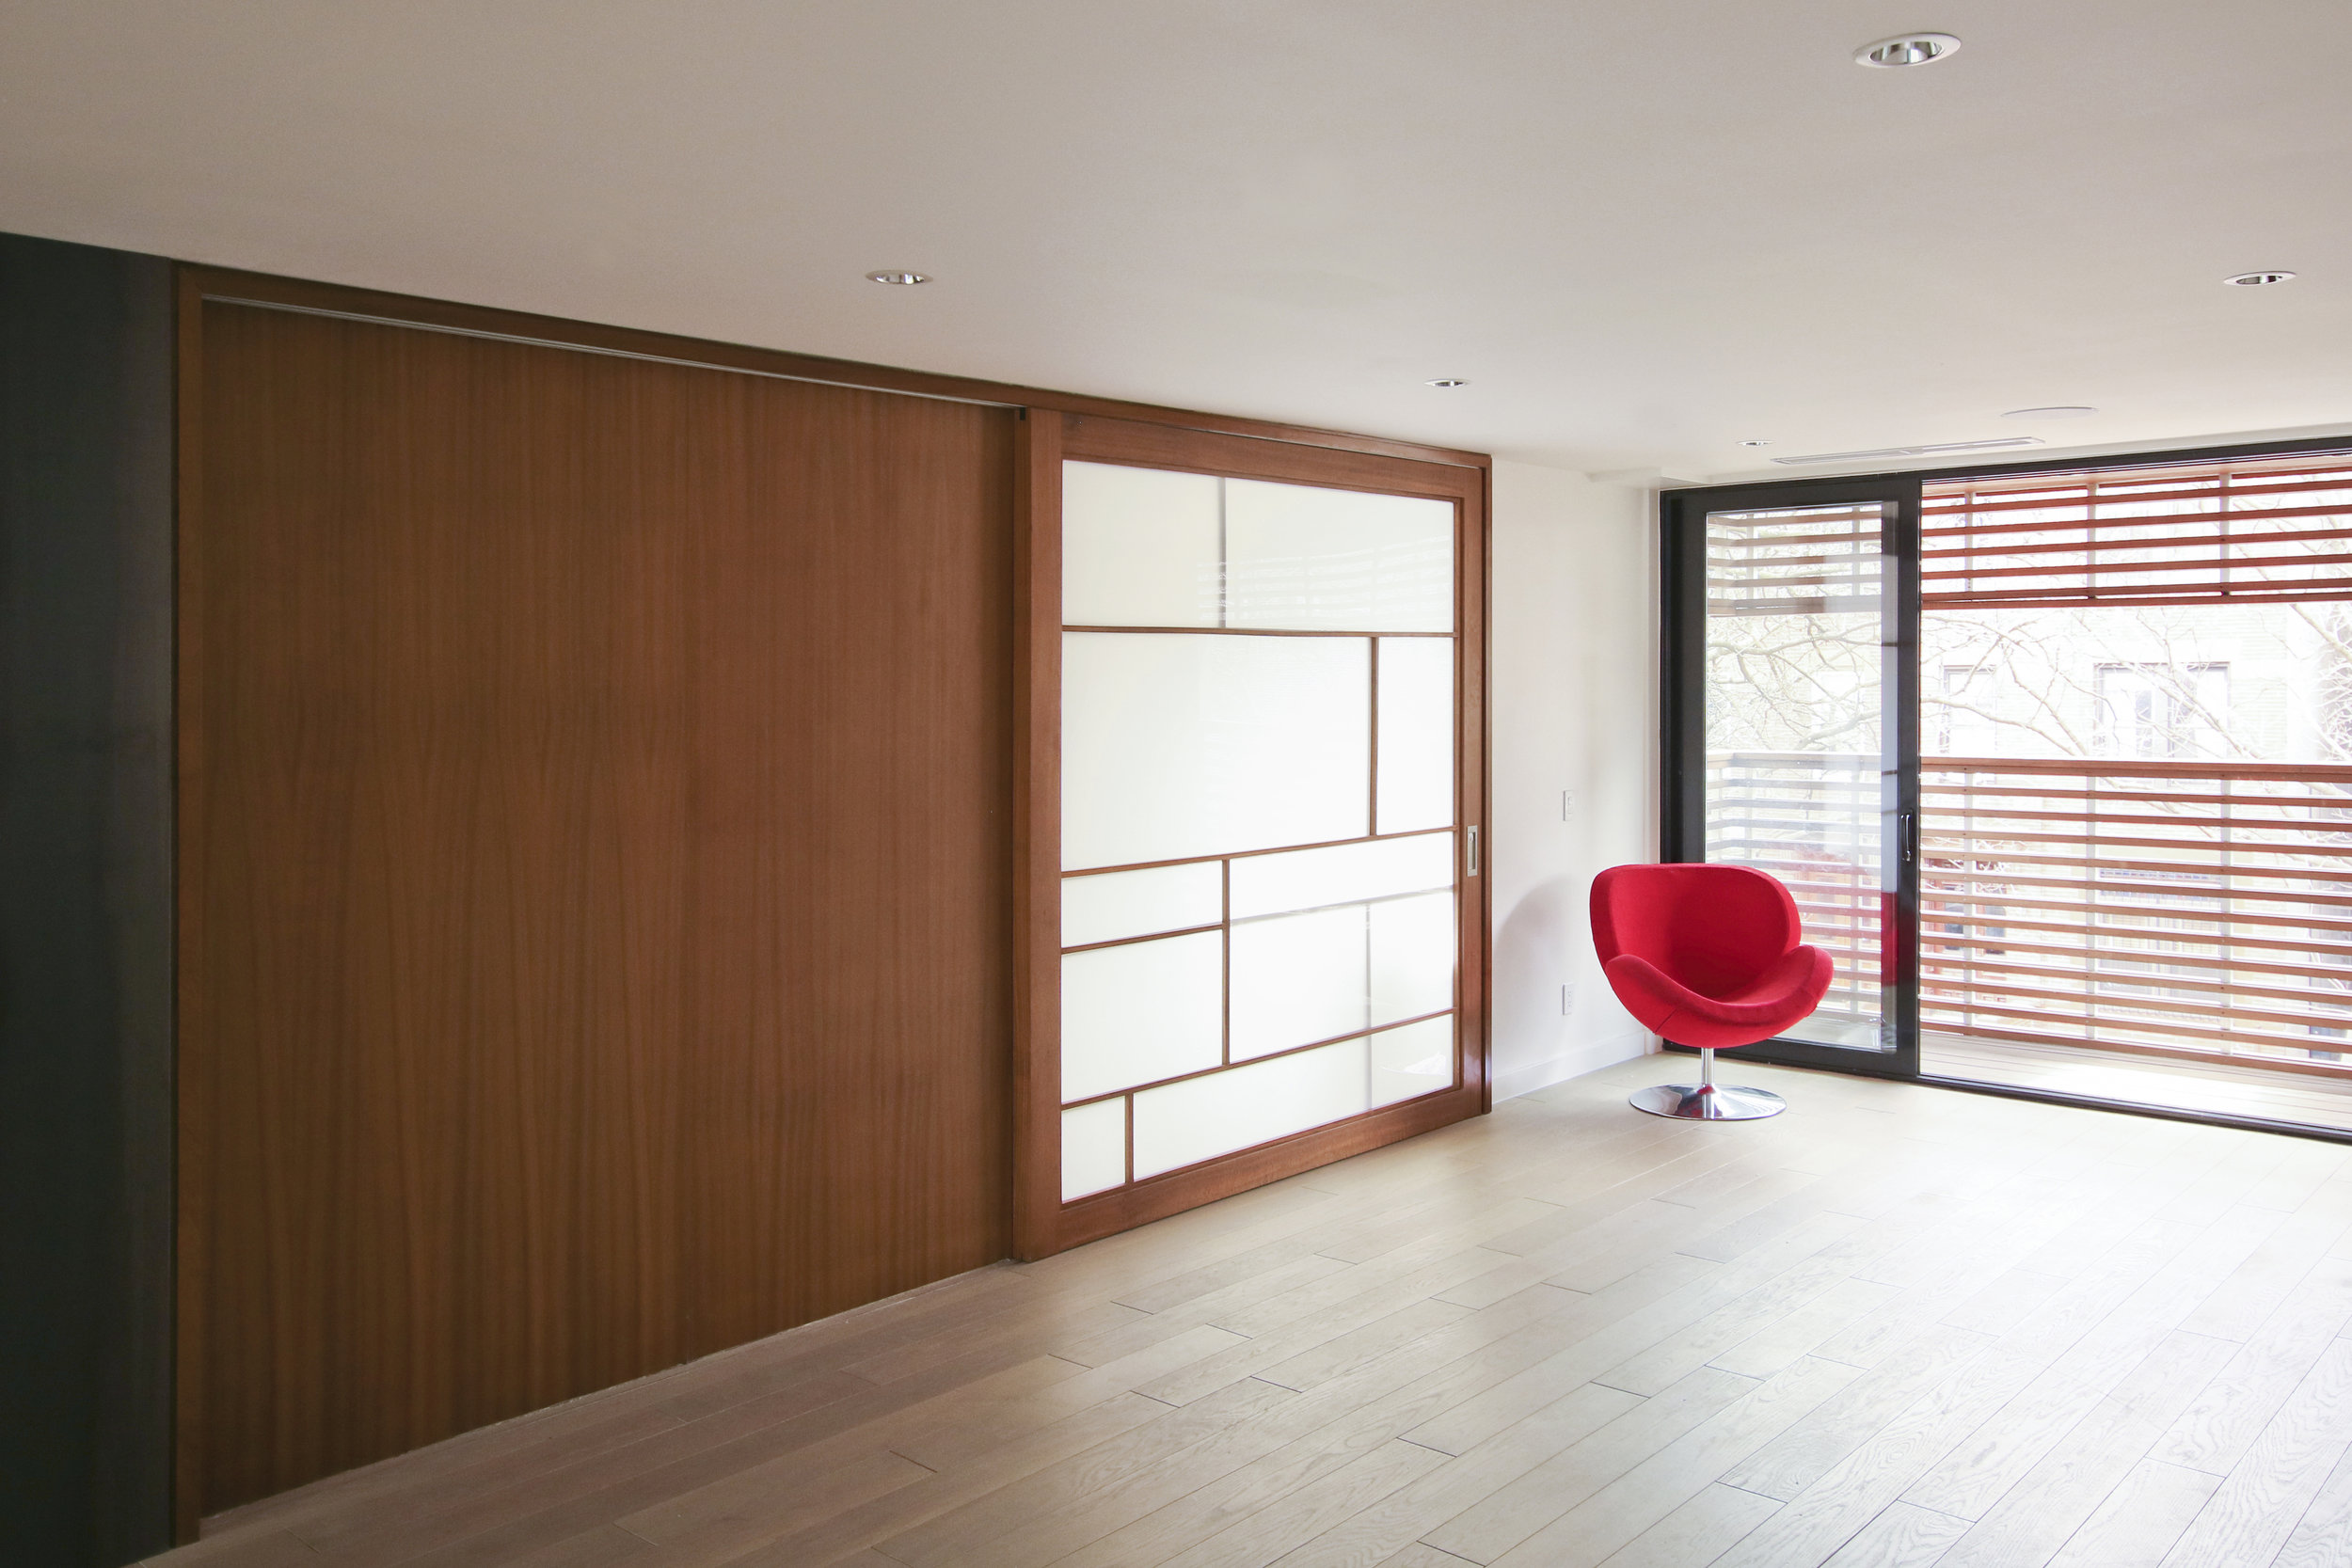 res4-resoltuion-4-architecture-modern-brownstone-home-renovation-interior-sliding-door.jpg